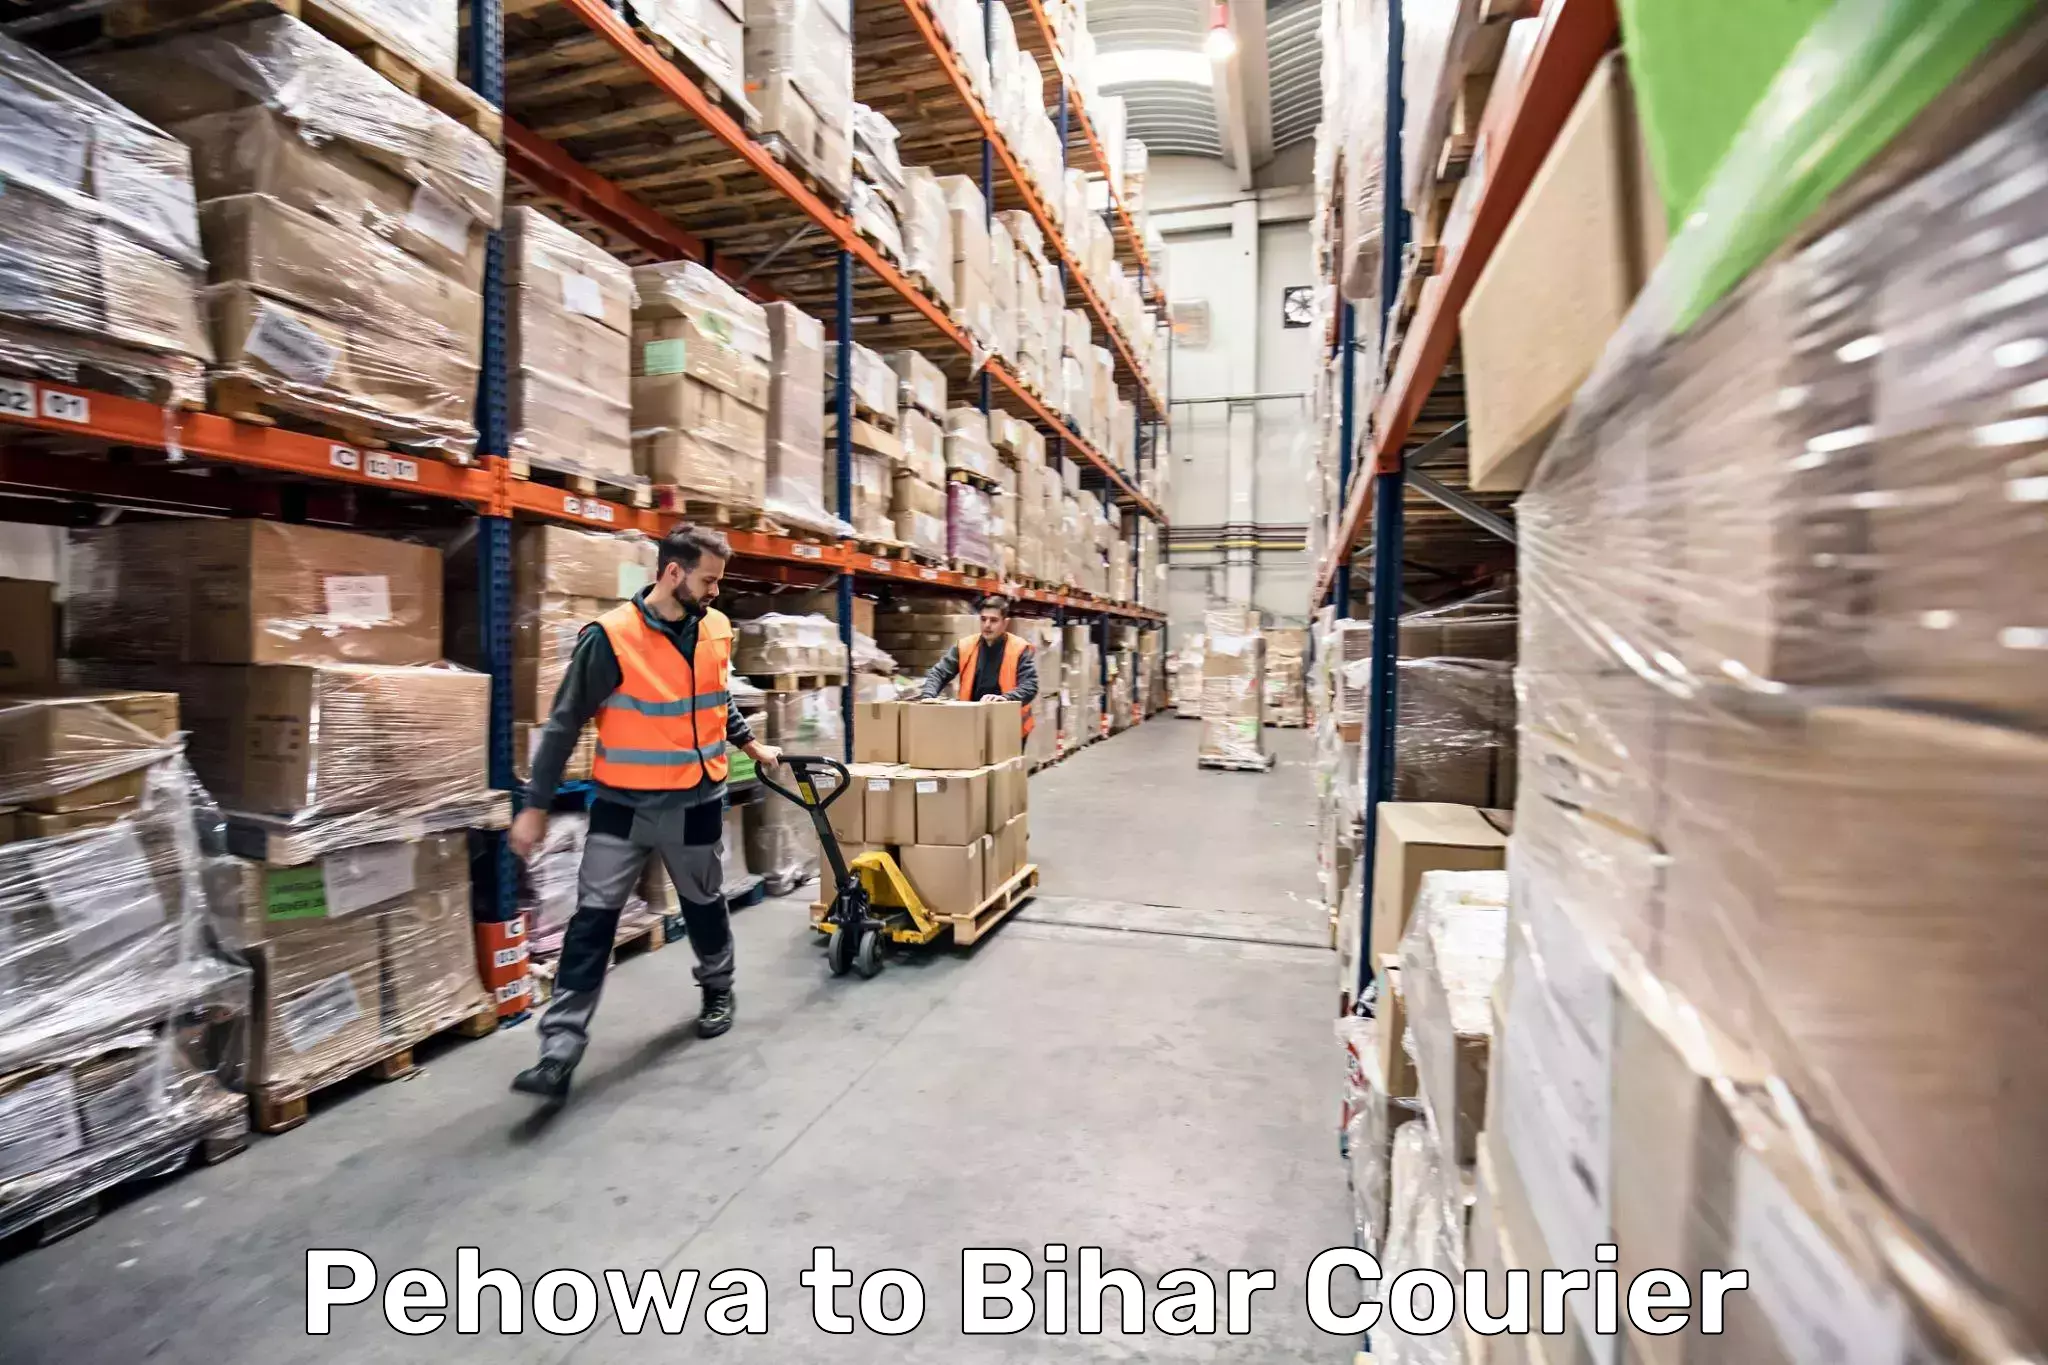 Luggage shipping estimate in Pehowa to Biraul